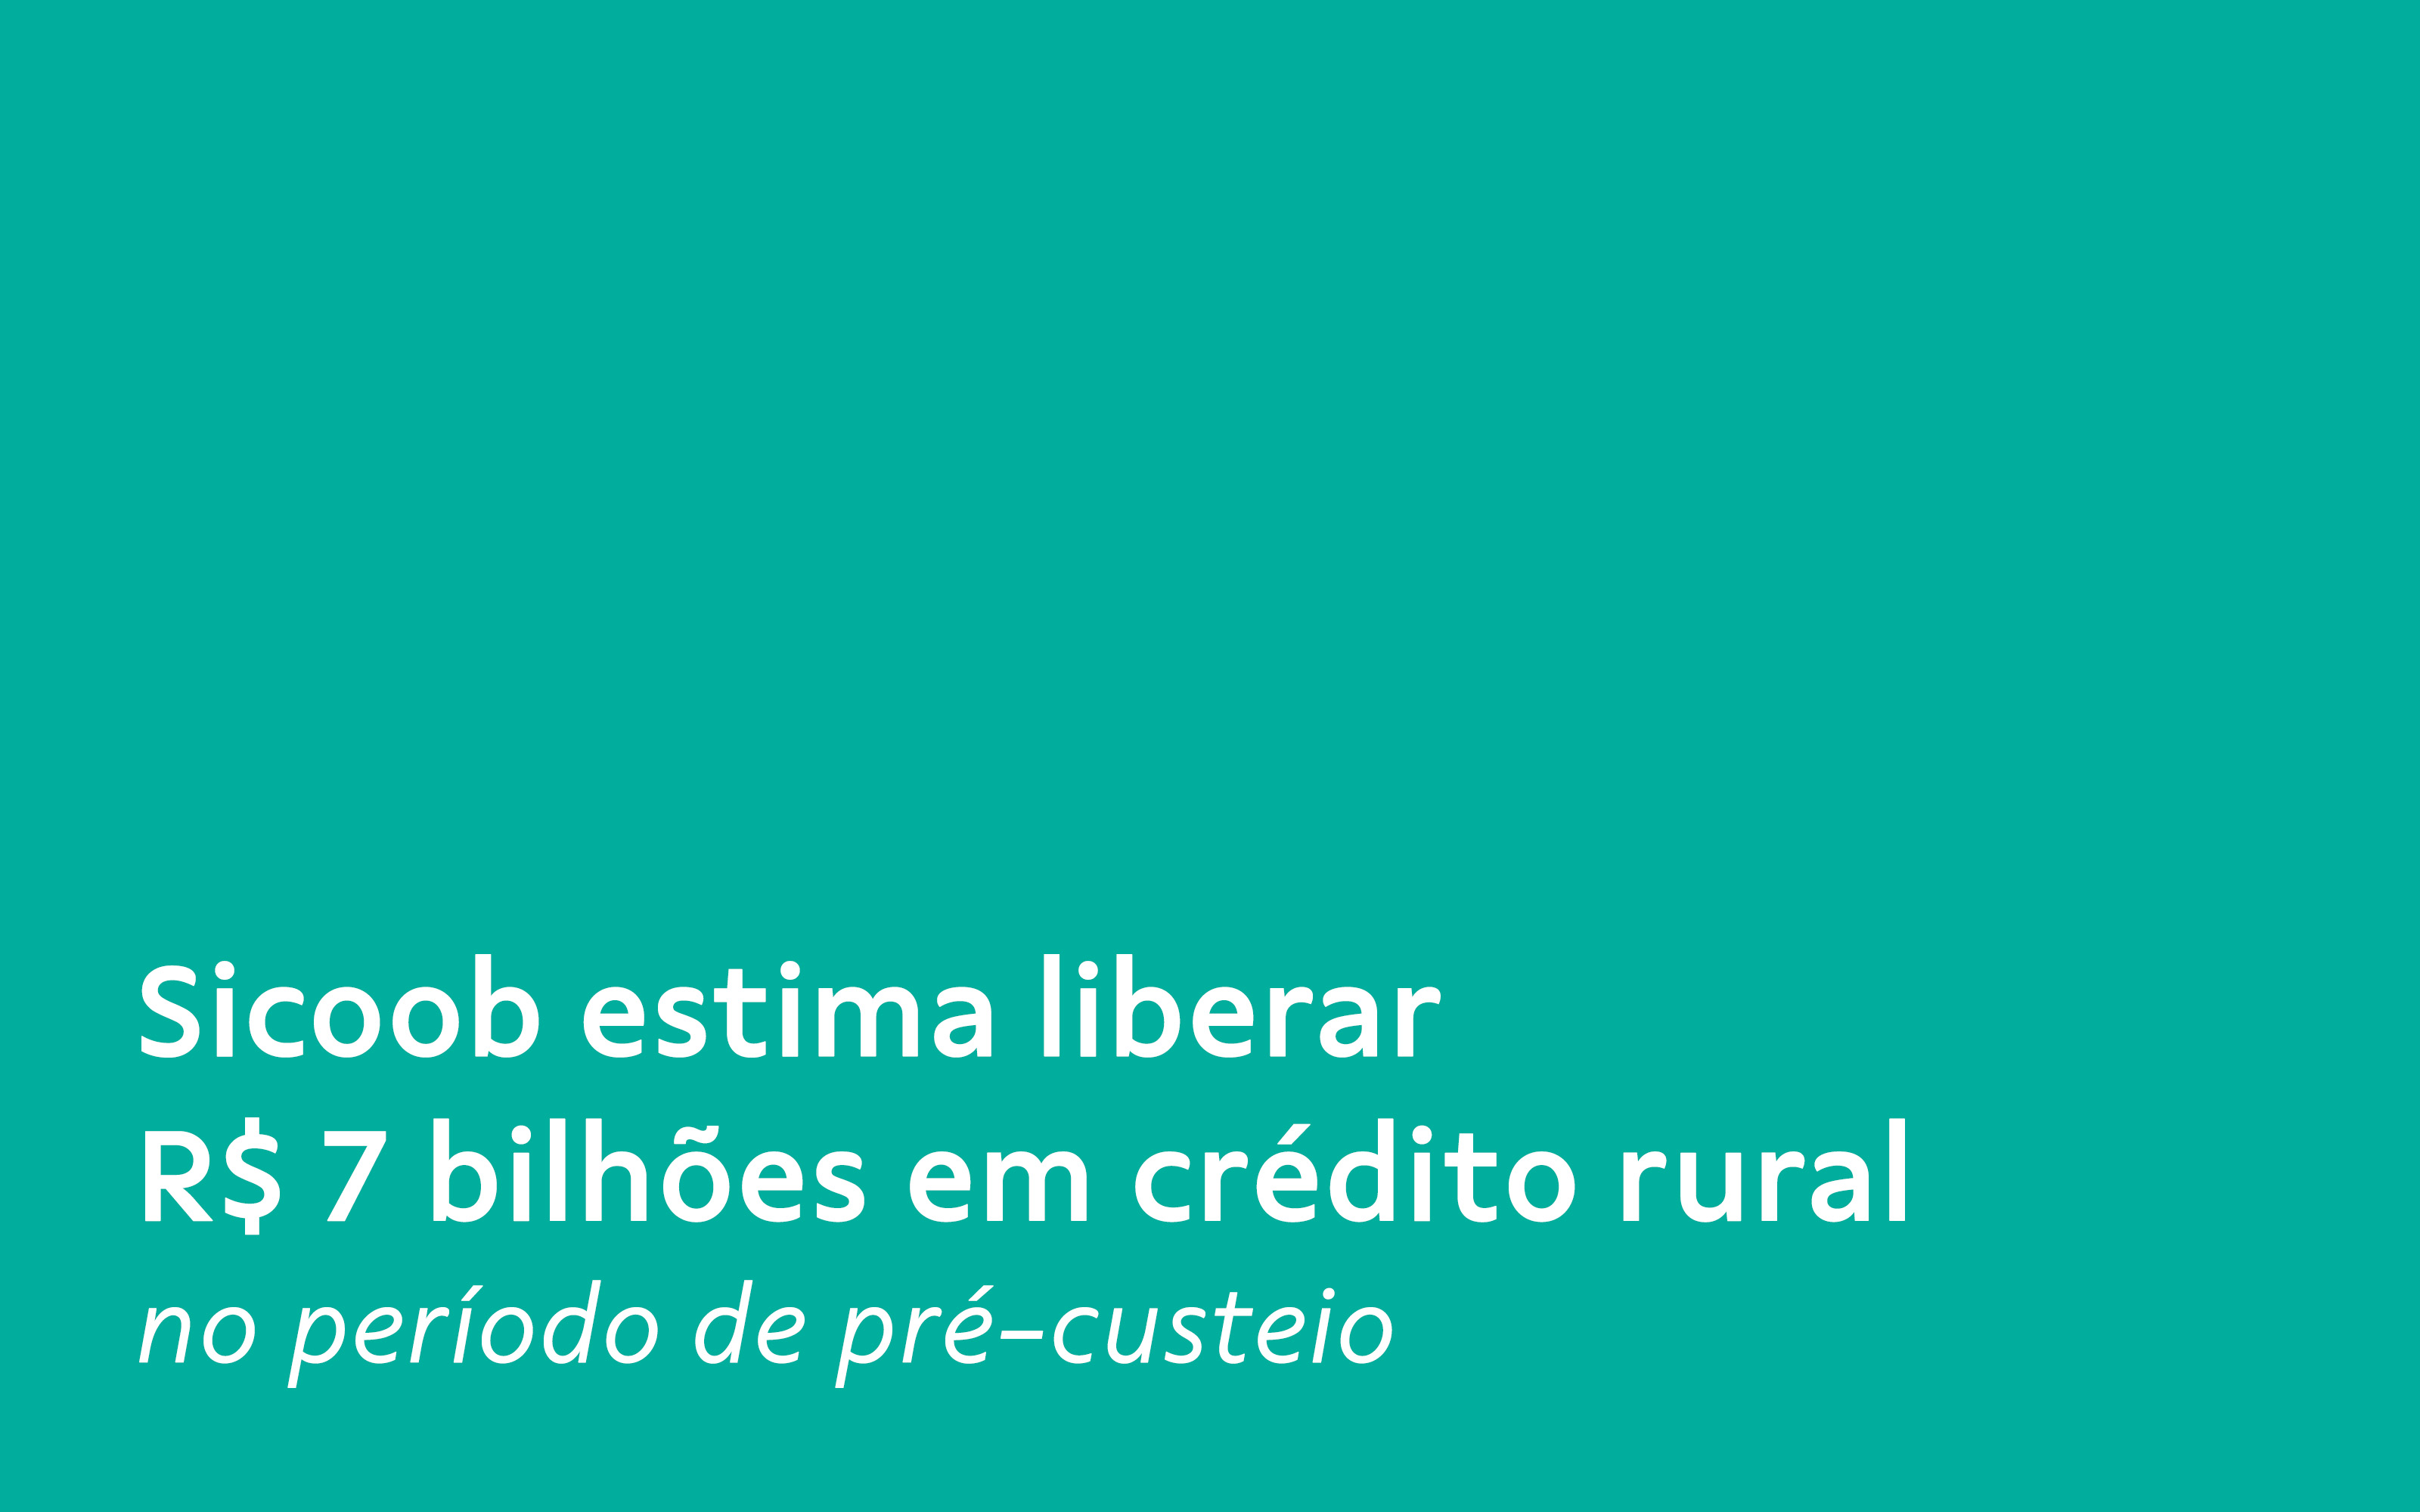 Imagem com fundo turquesa, escrito: Sicoob estima liberar R$ 7 bilhões em crédito rural  no período de pré-custeio